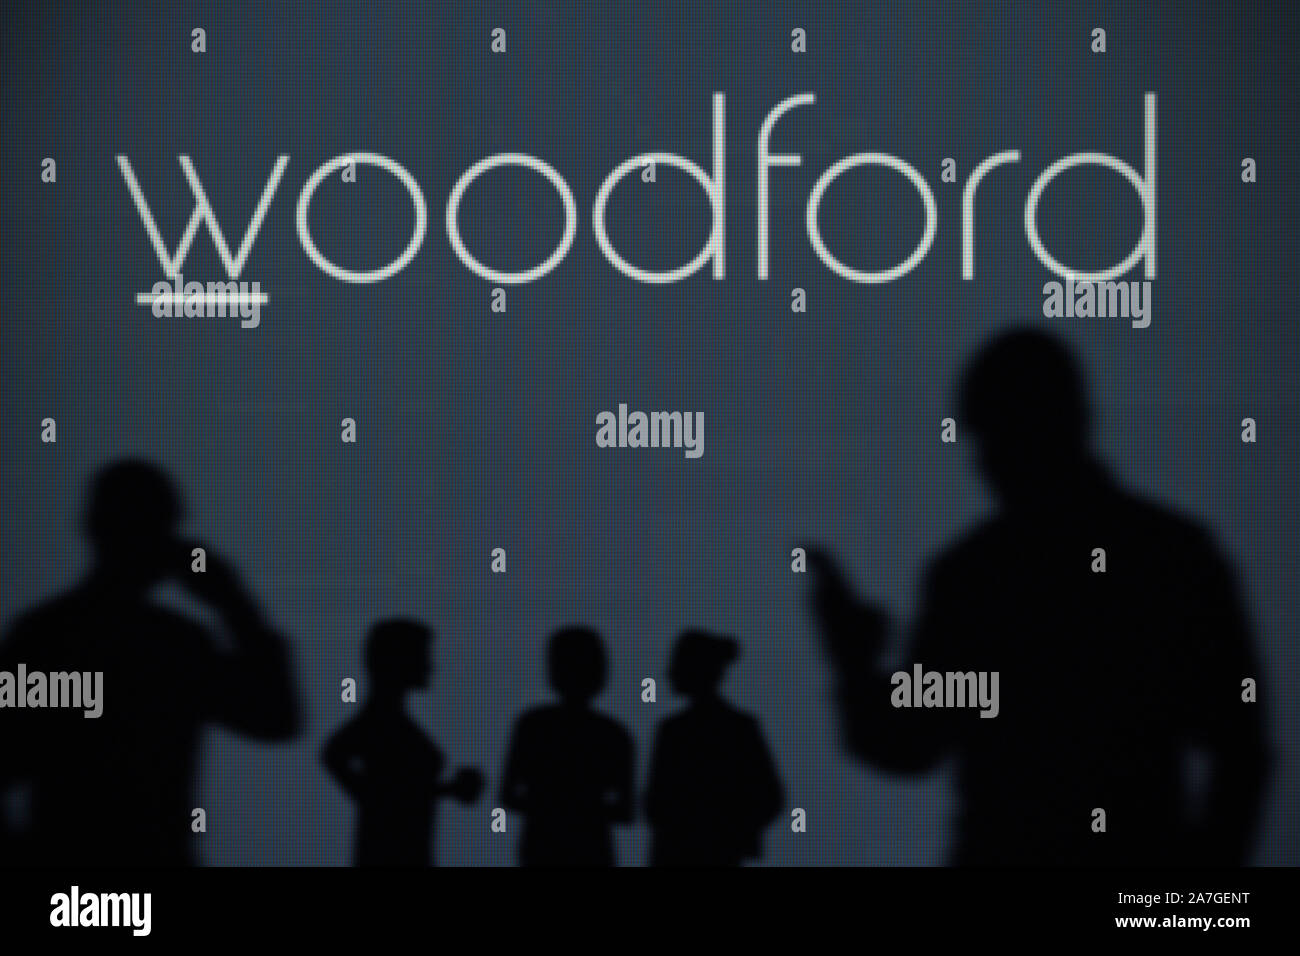 Le Woodford Capital Patient Trust logo est visible sur un écran LED à l'arrière-plan tandis qu'une silhouette personne utilise un smartphone (usage éditorial uniquement) Banque D'Images